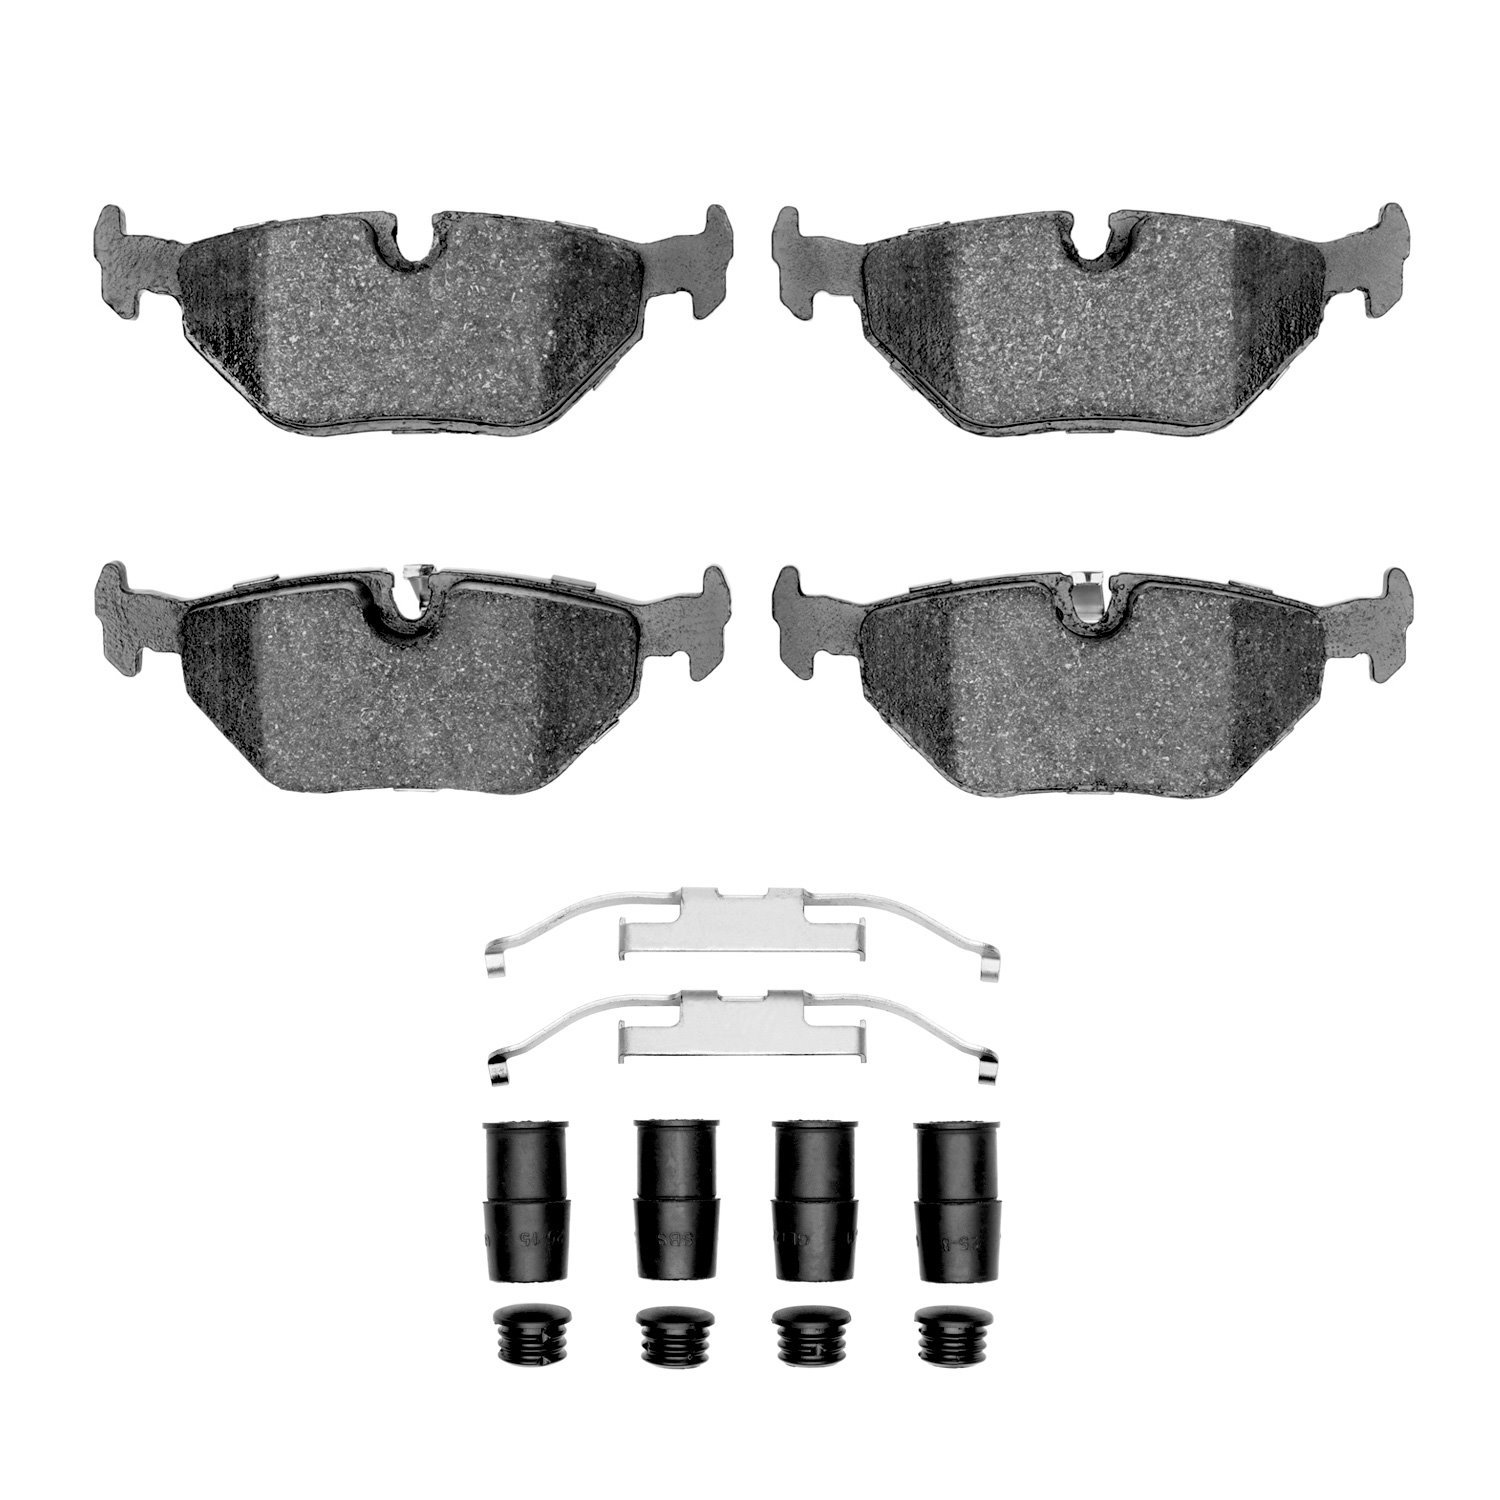 Ceramic Brake Pads & Hardware Kit, 1991-2008 BMW, Position: Rear